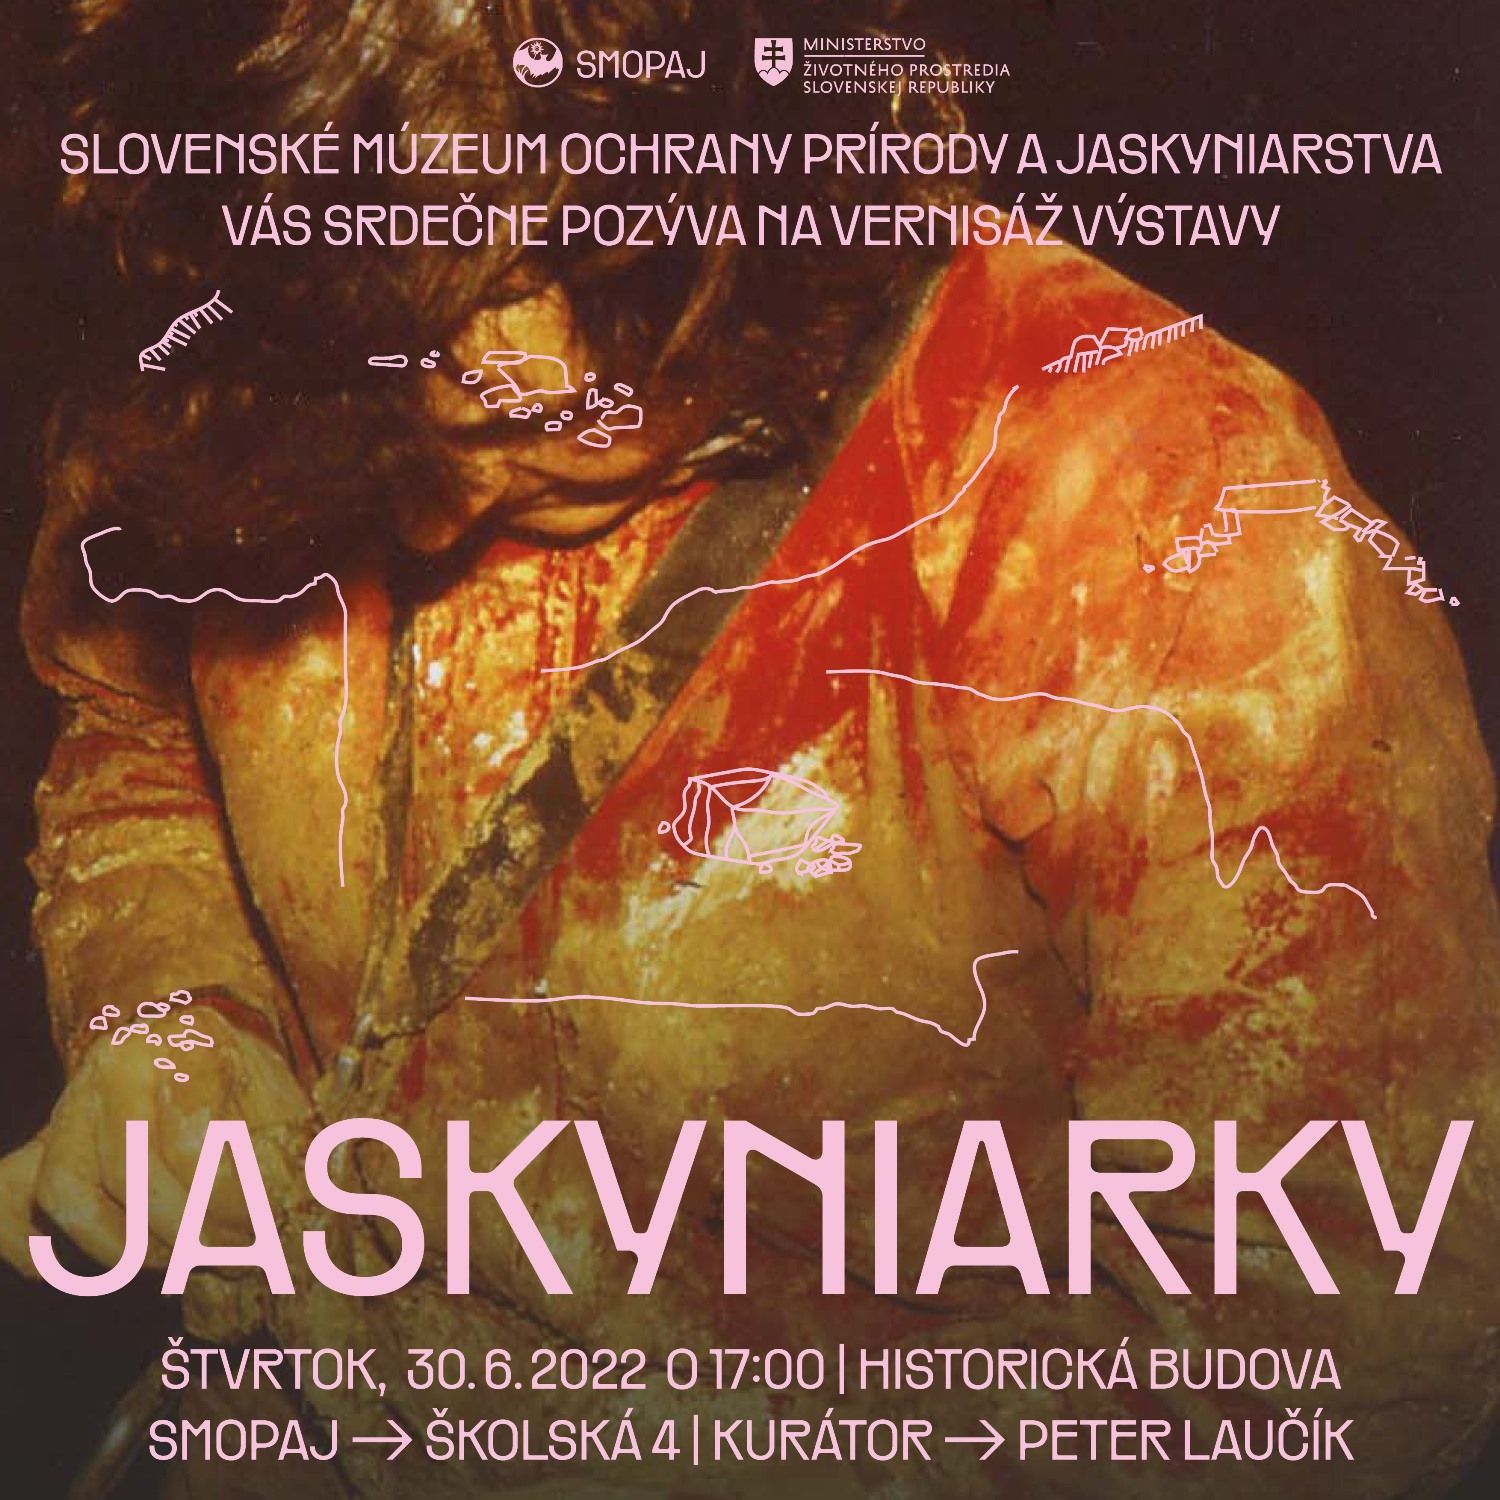 Vernisáž výstavy Jaskyniarky Zdroj  mikulas.sk.jpg